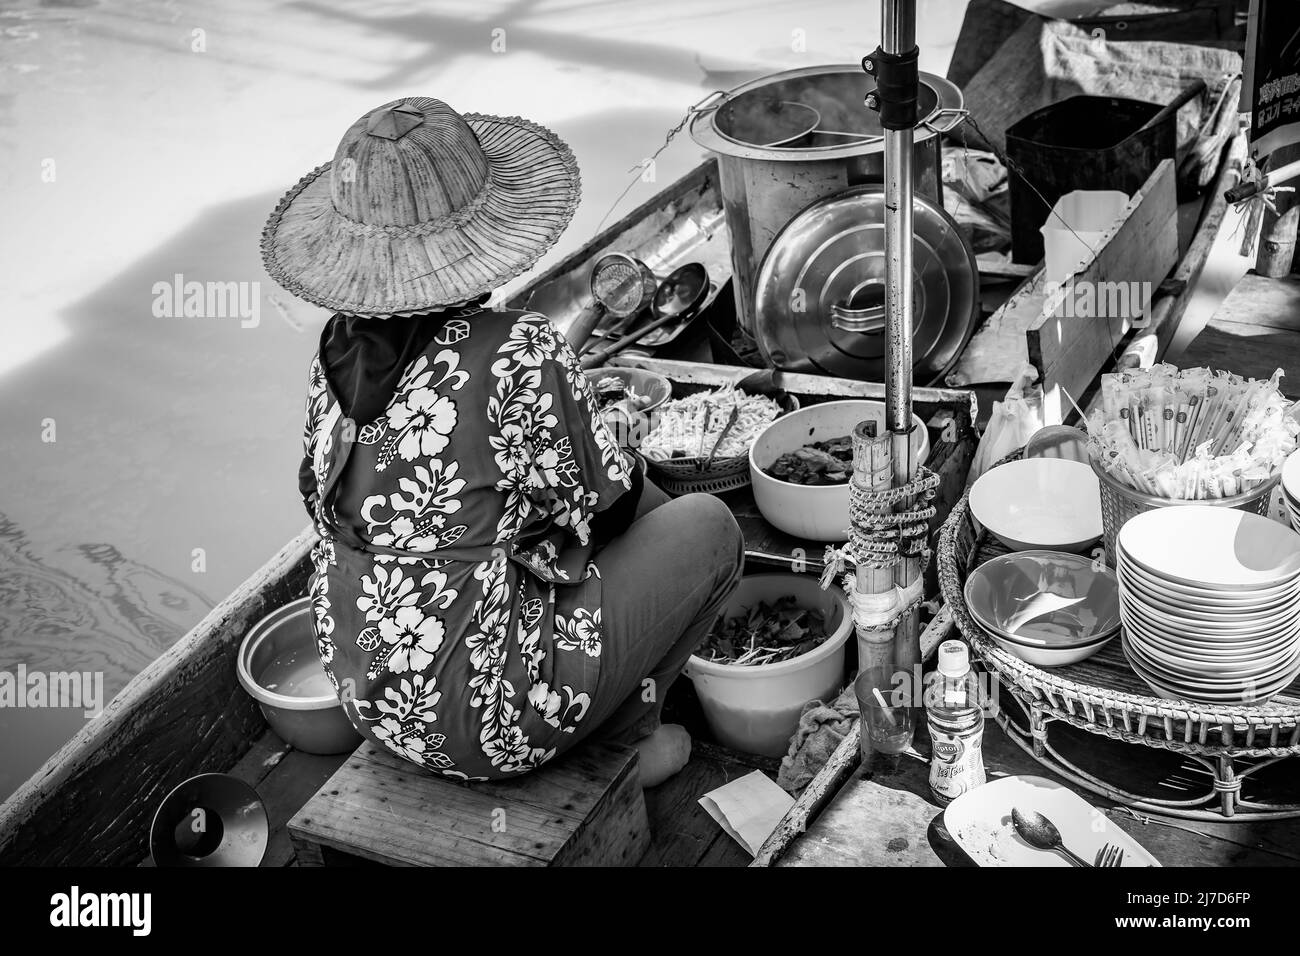 Pattaya, Thaïlande - 6 décembre 2009: Vendeur de nourriture de rue en bateau au marché flottant de Pattaya. Photographie en noir et blanc Banque D'Images